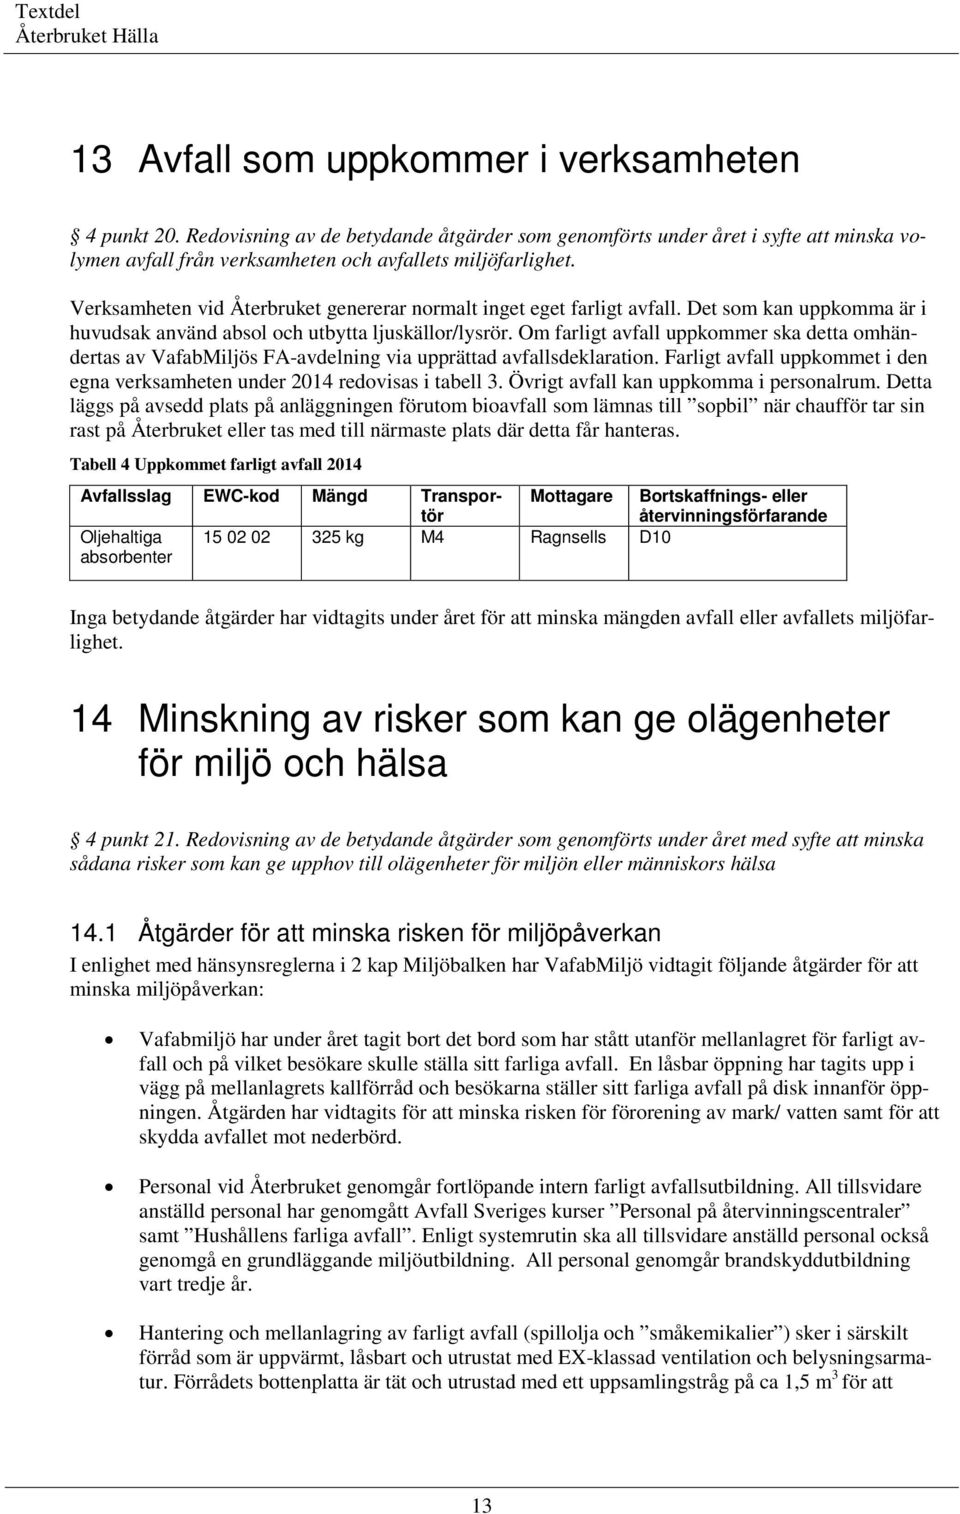 Om farligt avfall uppkommer ska detta omhändertas av VafabMiljös FA-avdelning via upprättad avfallsdeklaration. Farligt avfall uppkommet i den egna verksamheten under 2014 redovisas i tabell 3.